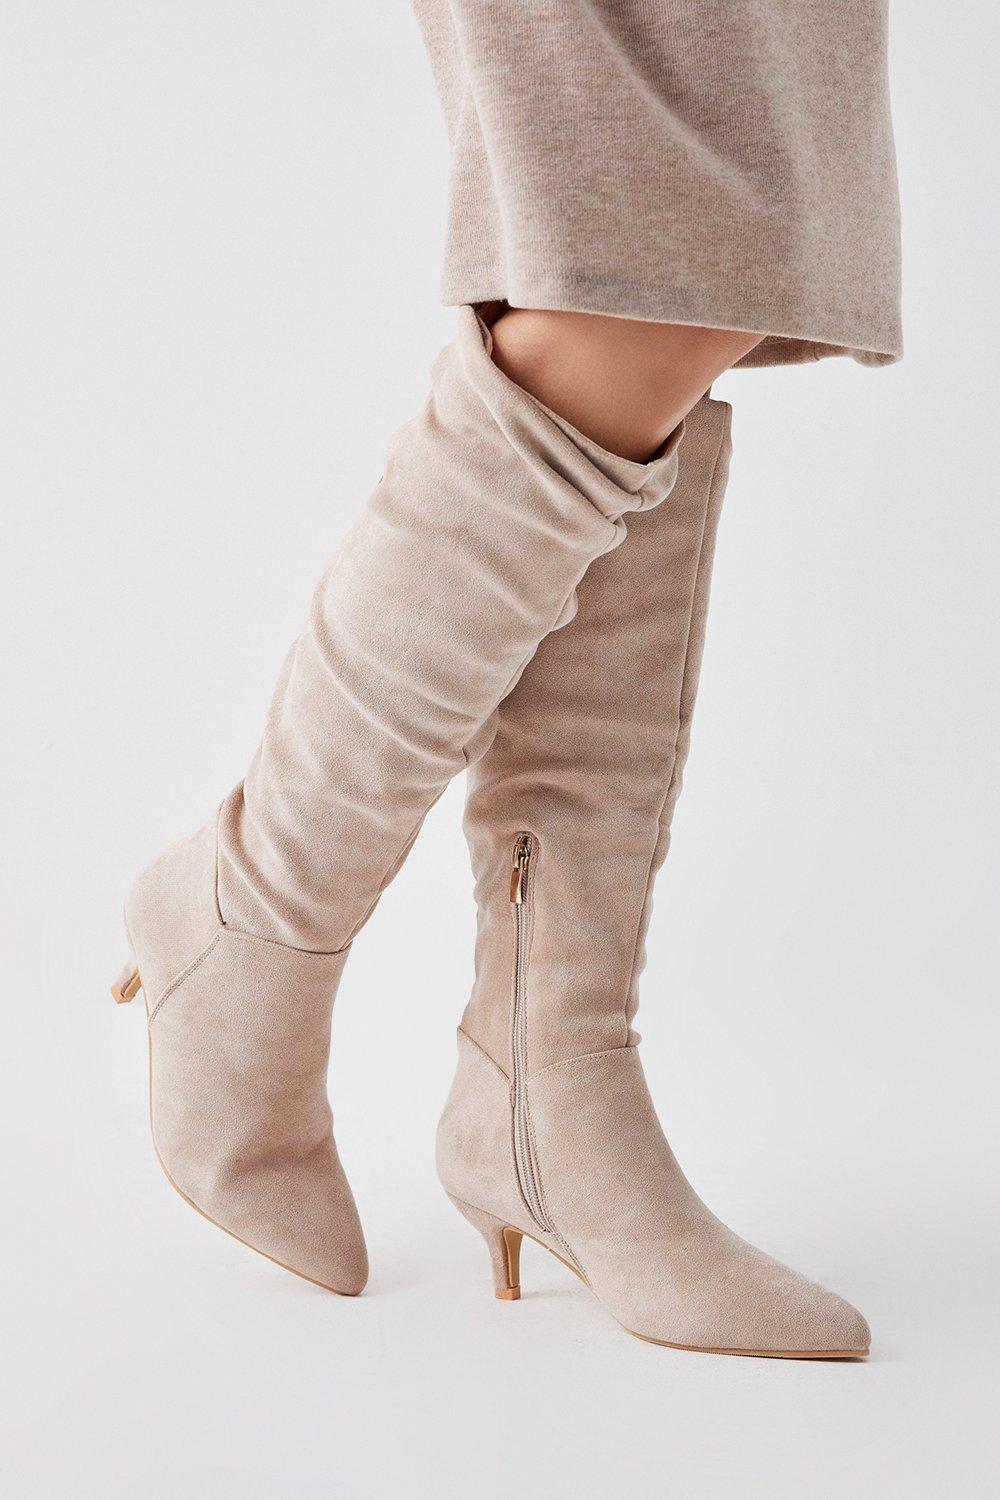 Women’s Khloe Knee High Low Heel Ruched Boots - beige - 5